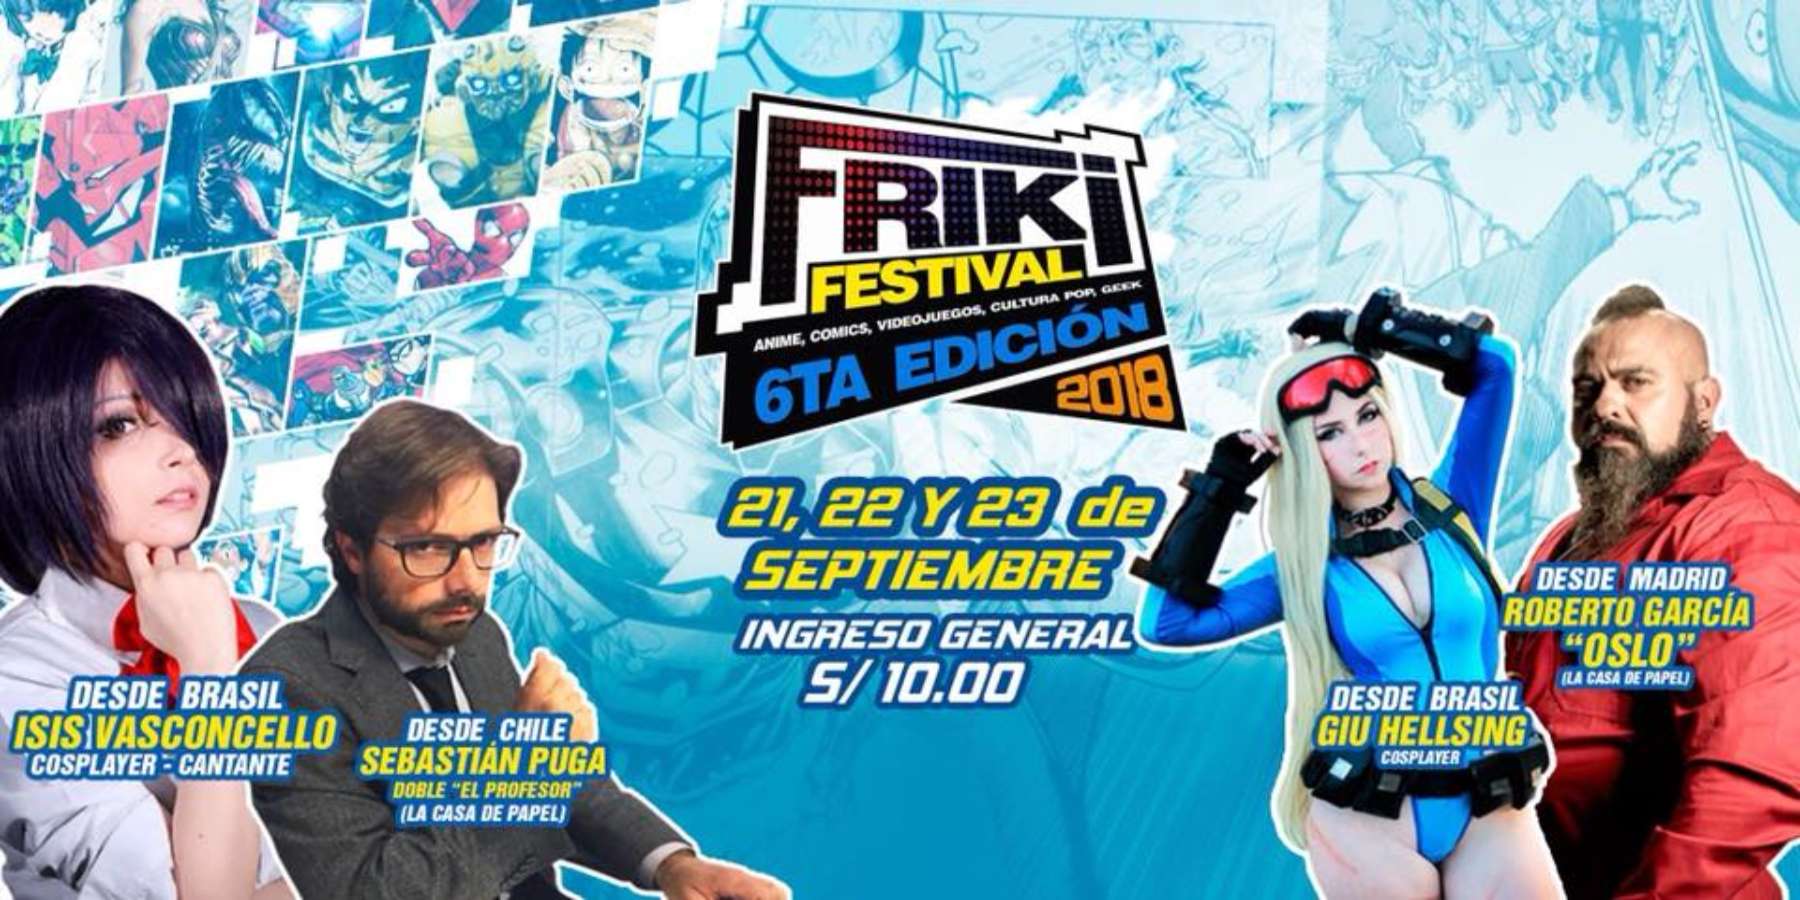 Friki Festival Sexta Edición trae a Lima a Oslo de La Casa de Papel